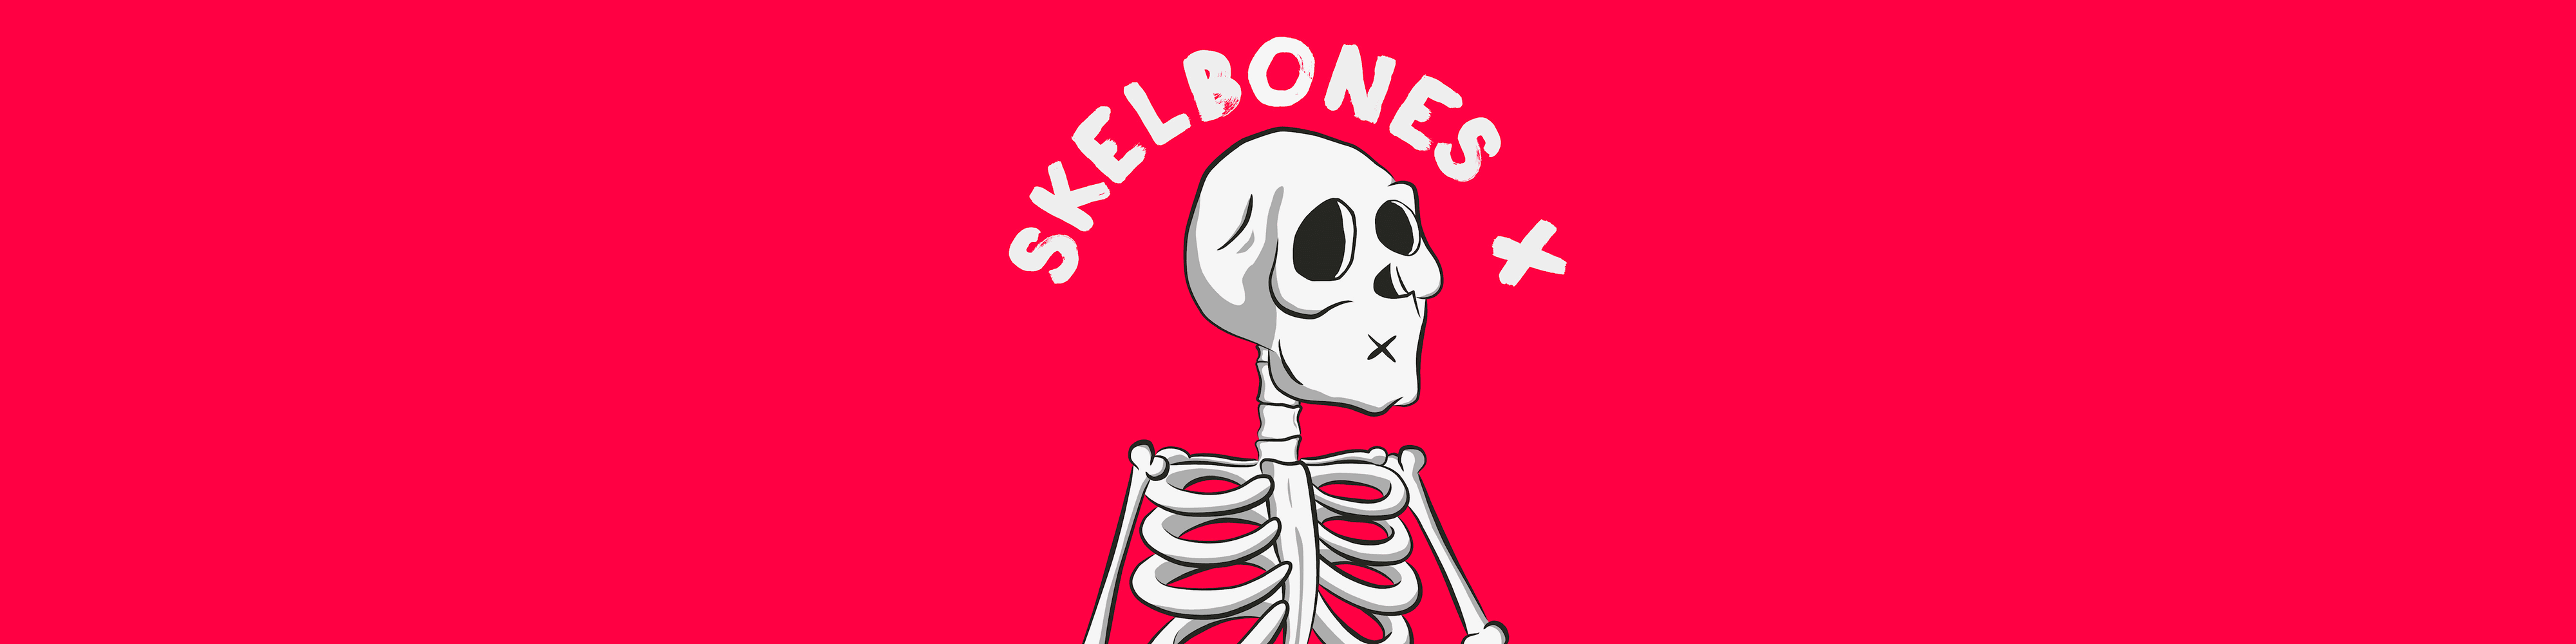 Skelbones bannière